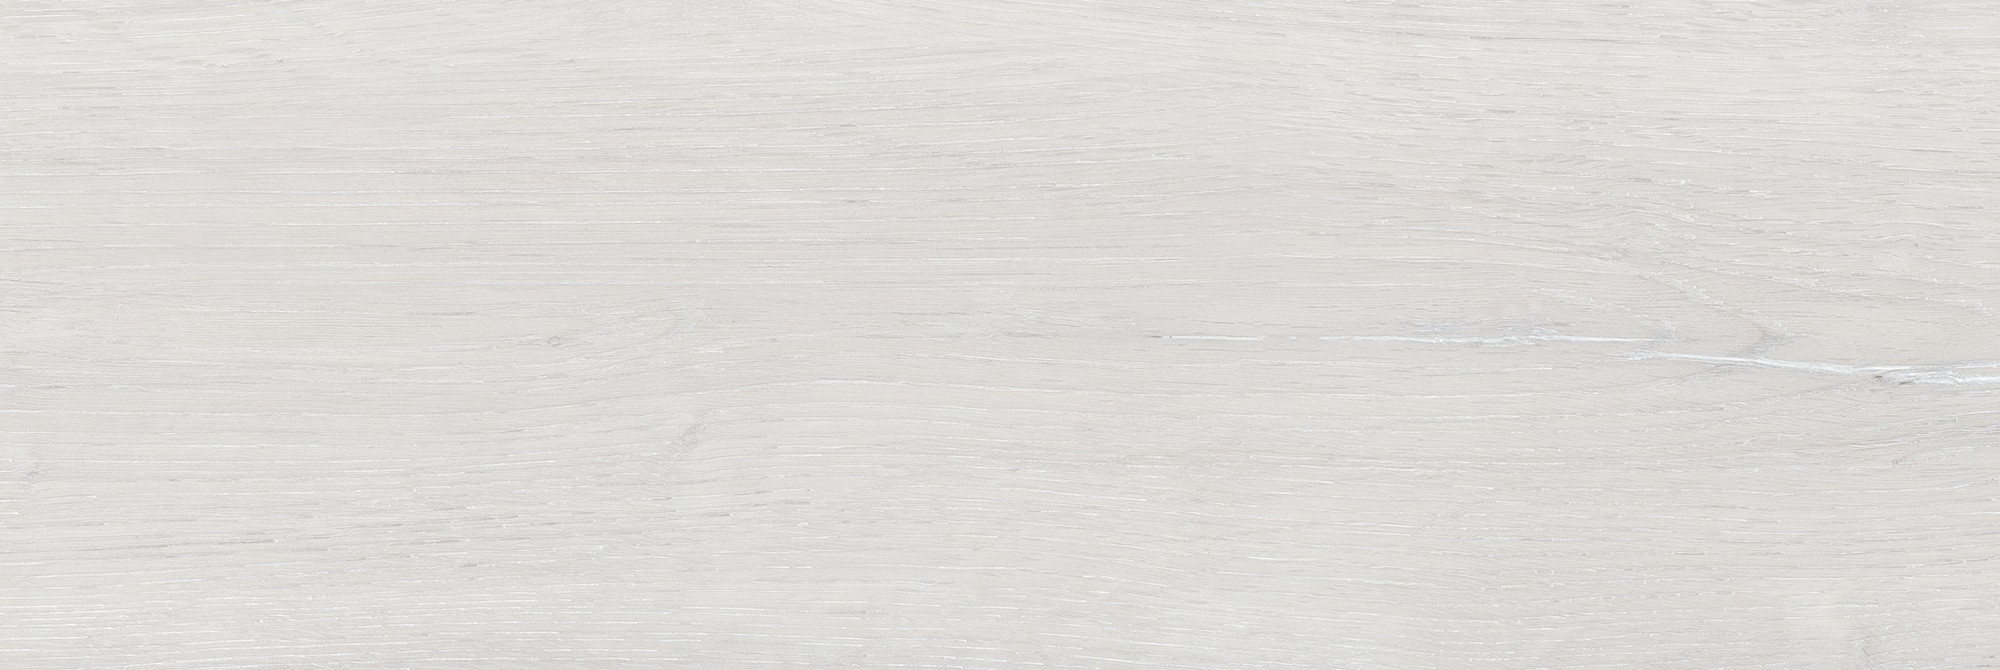 Carrelage Imitation parquet Salou blanc mate 19x57 cm